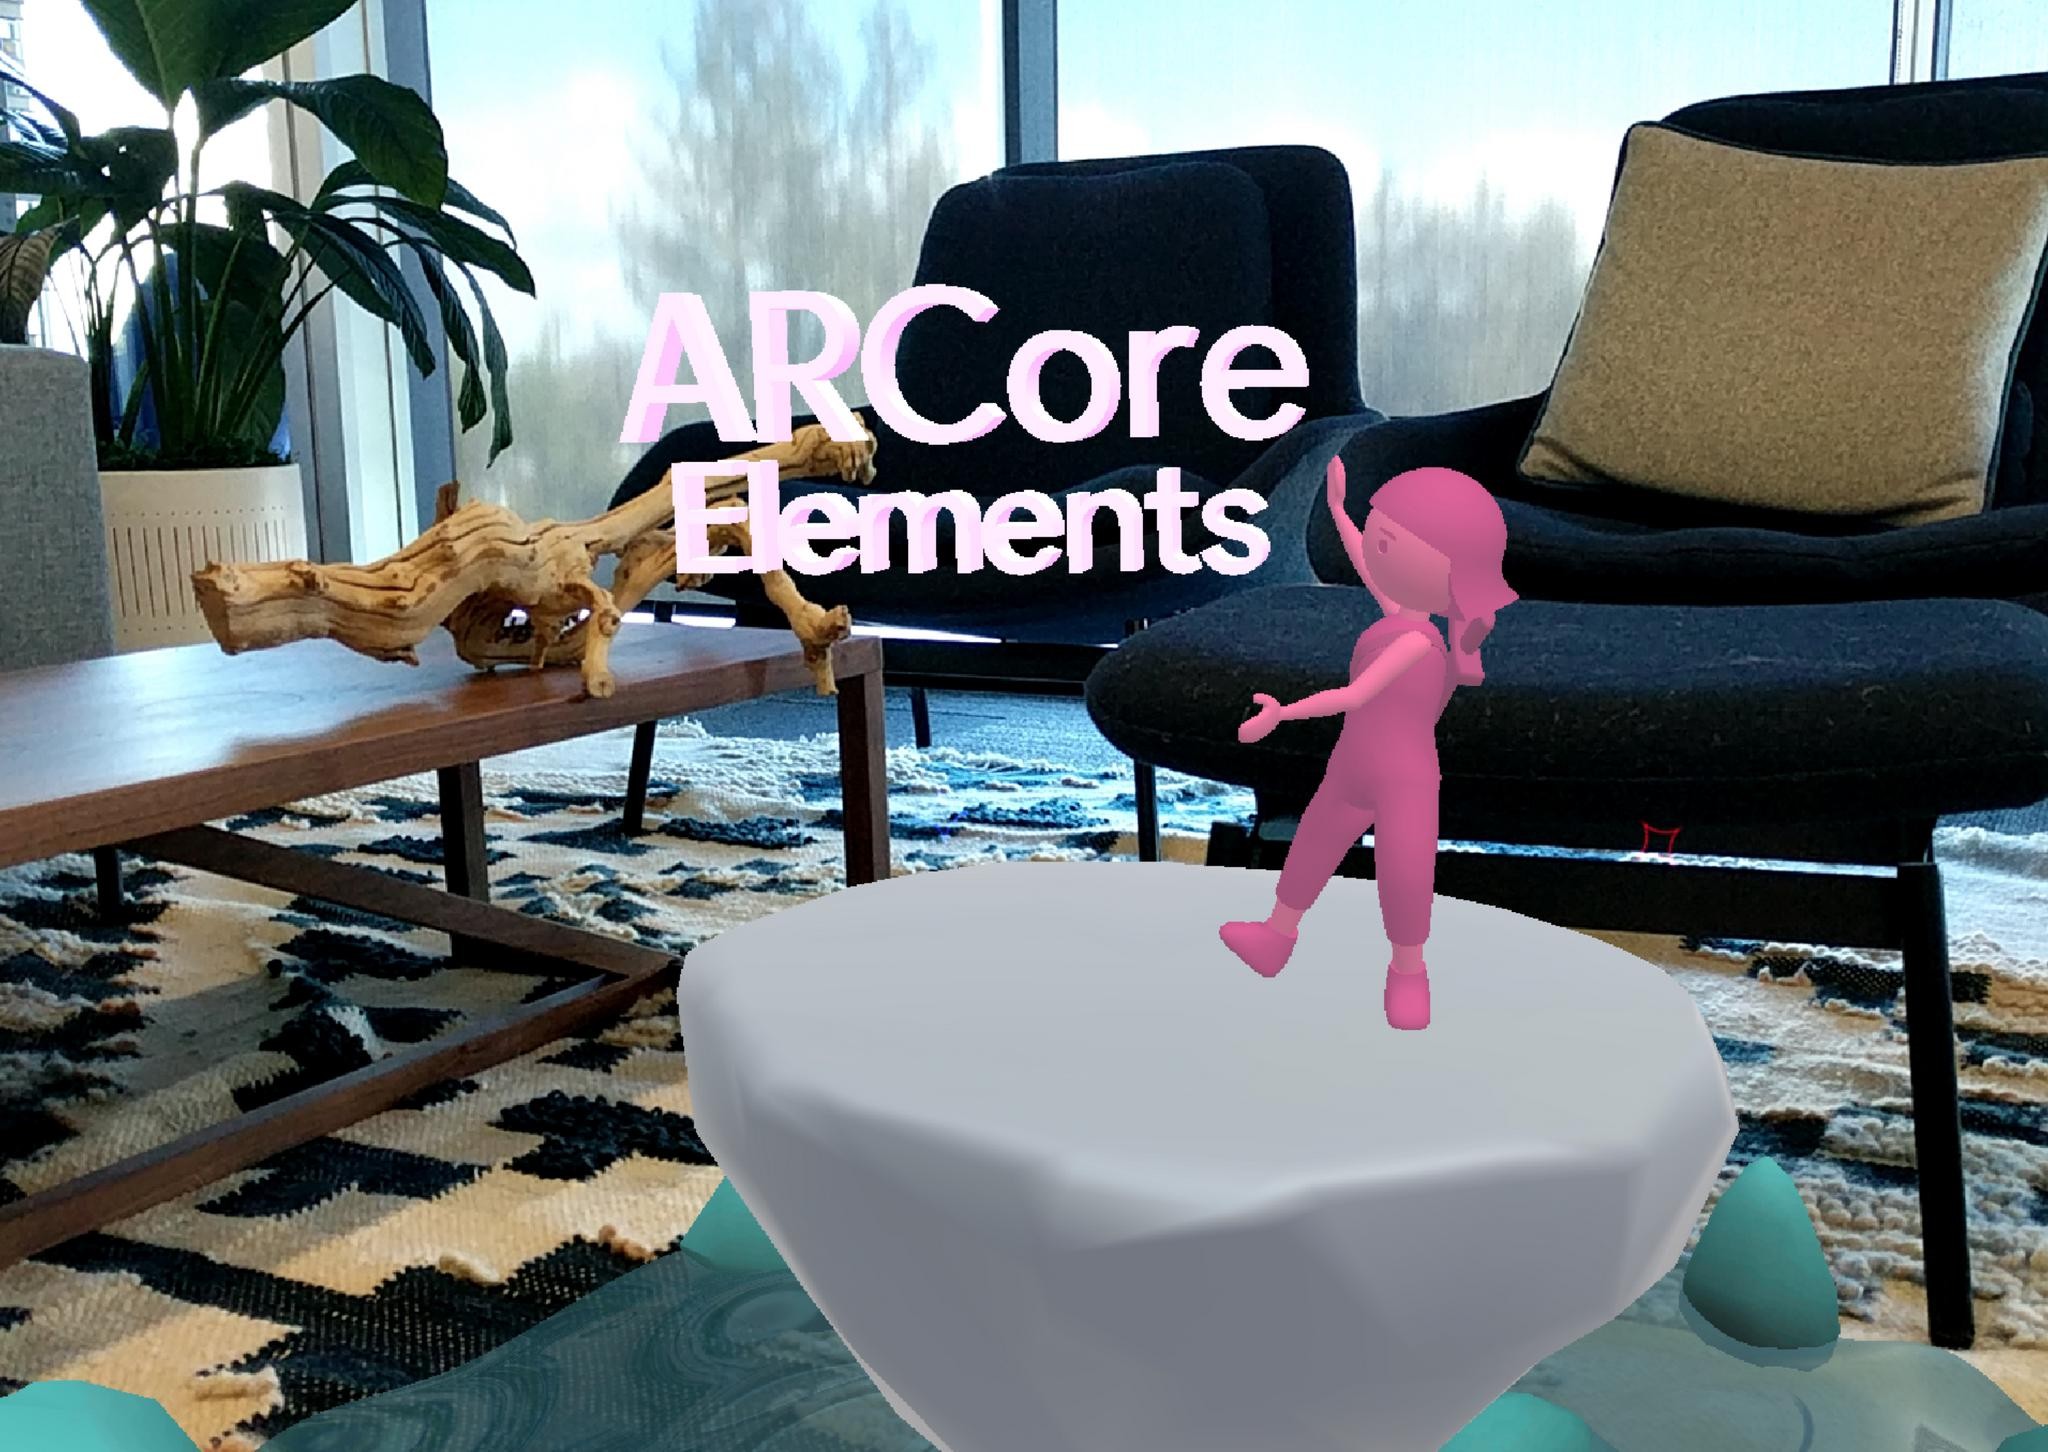 ARCore Elements App